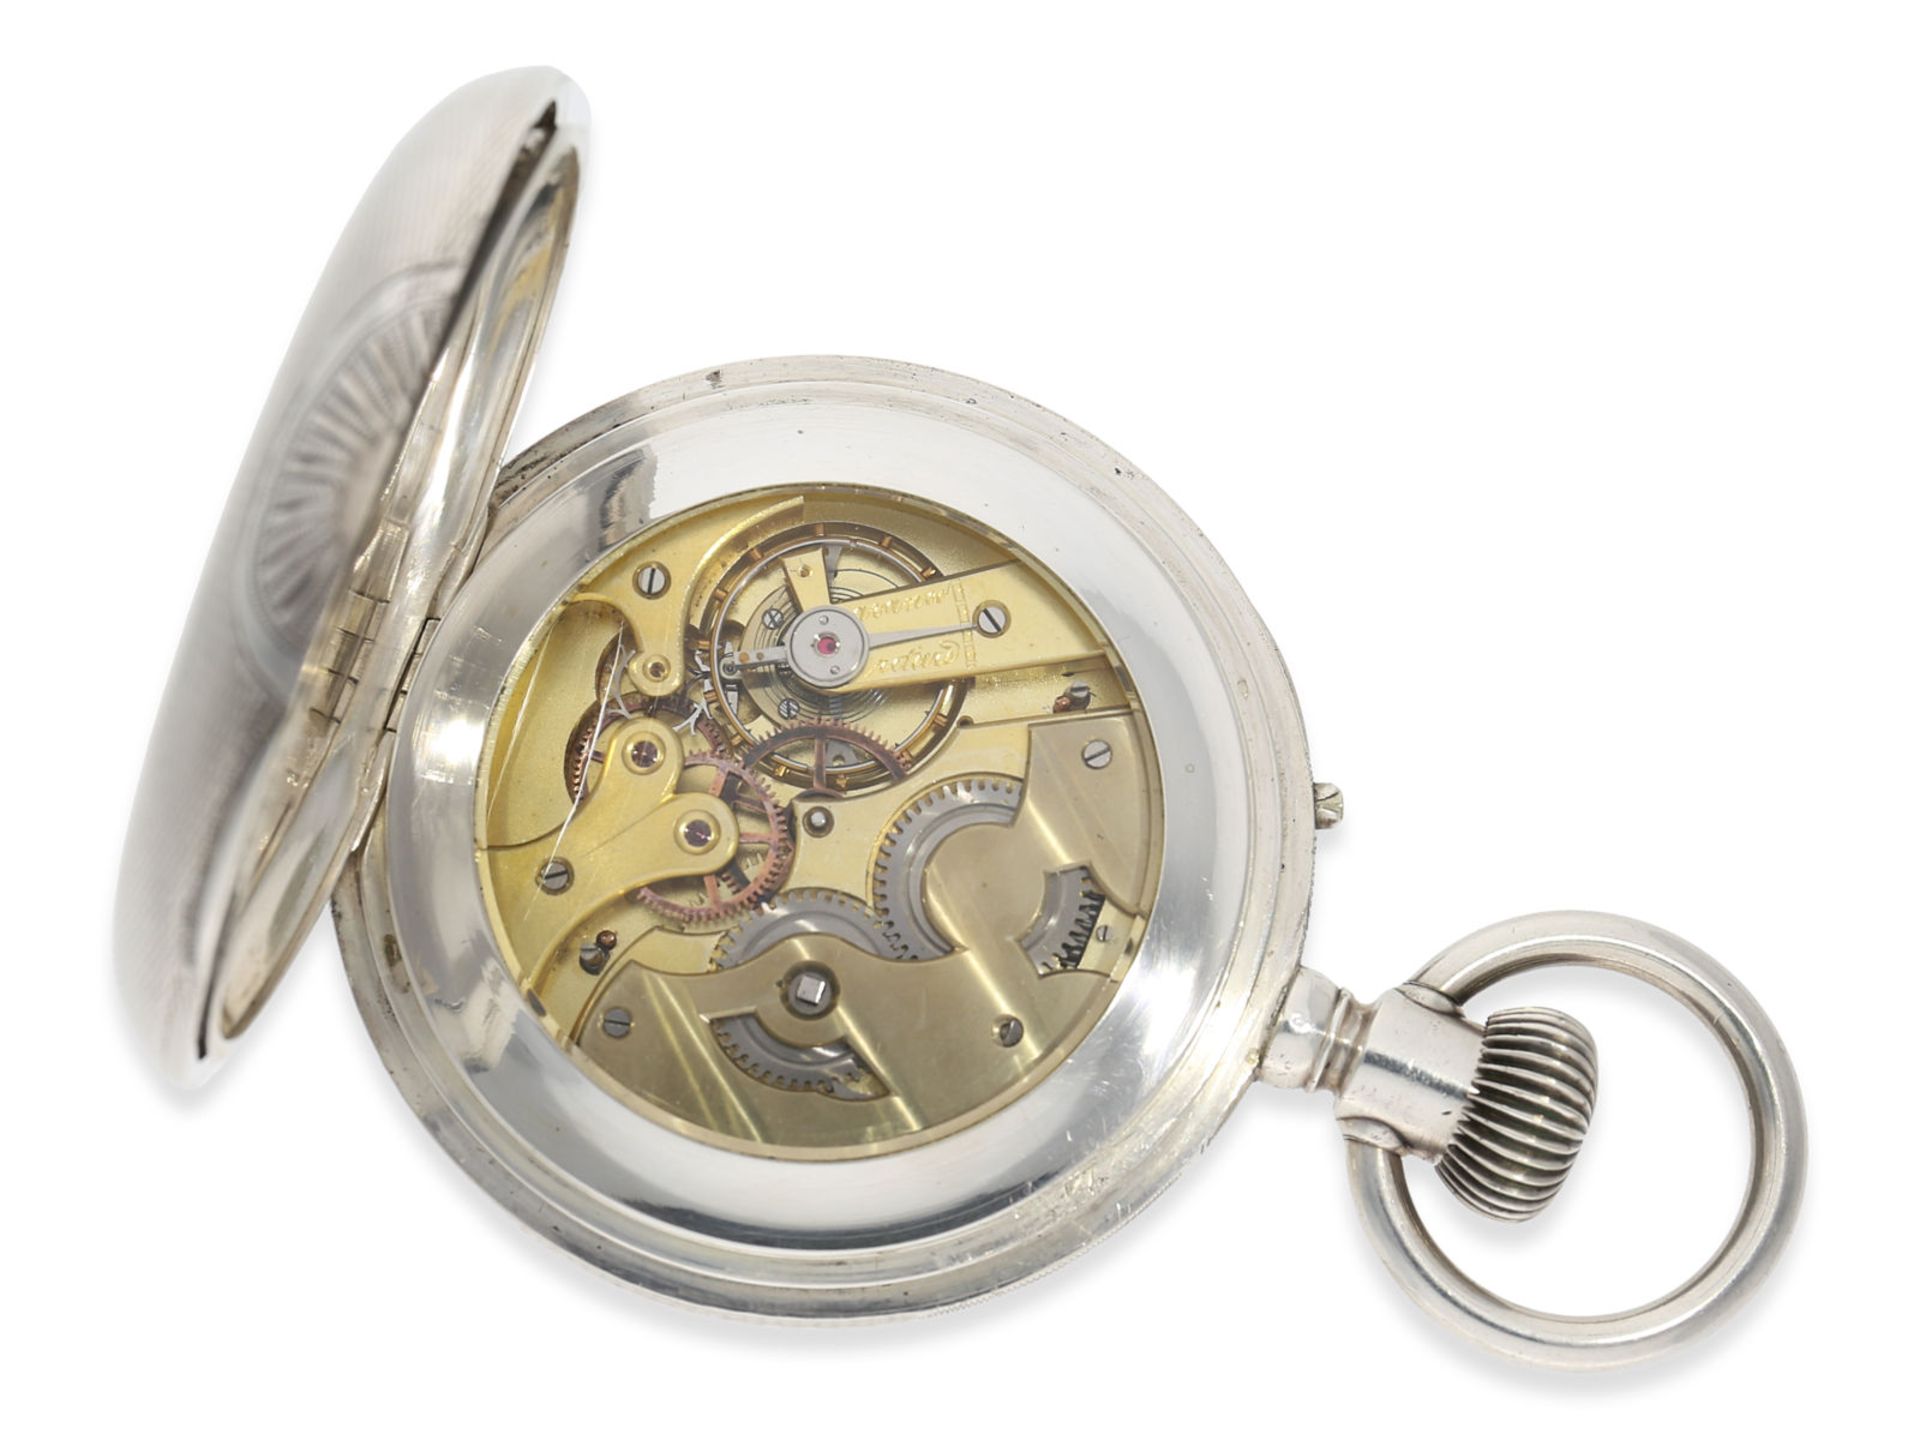 Taschenuhr: außergewöhnlich große russische Kalender-Uhr, Ankerchronometer in schwerem Silbergehäuse - Bild 3 aus 5